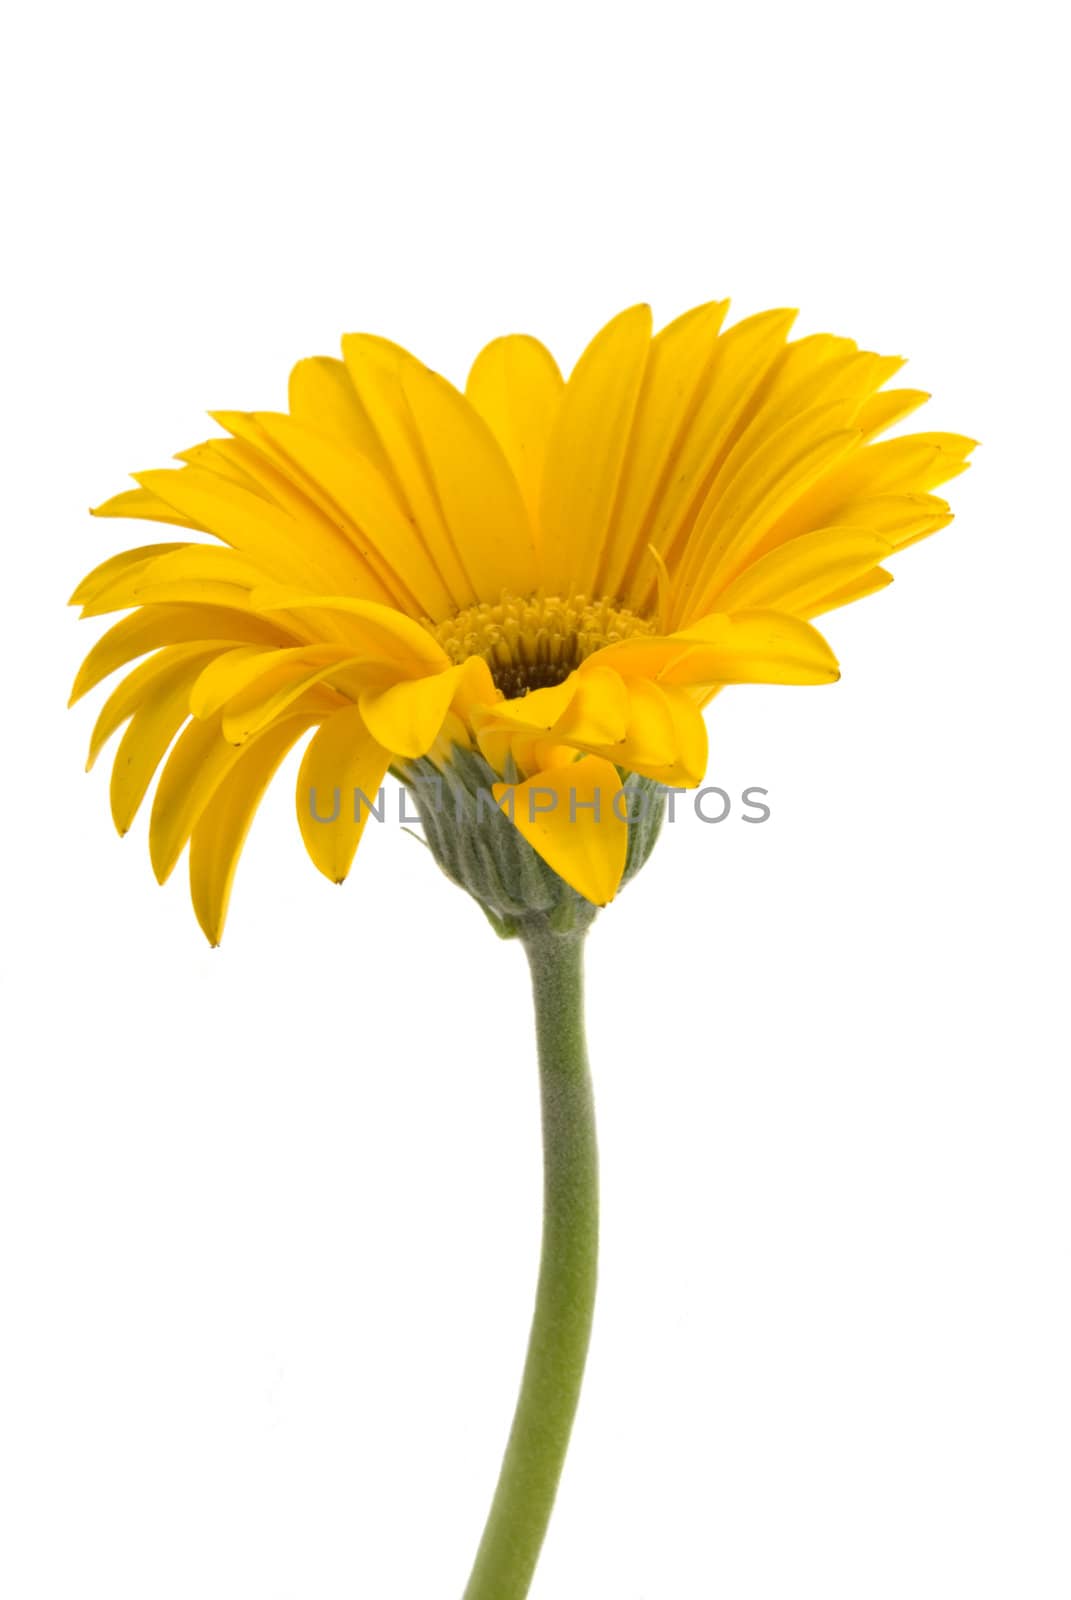 Yellow Gerbera daisy